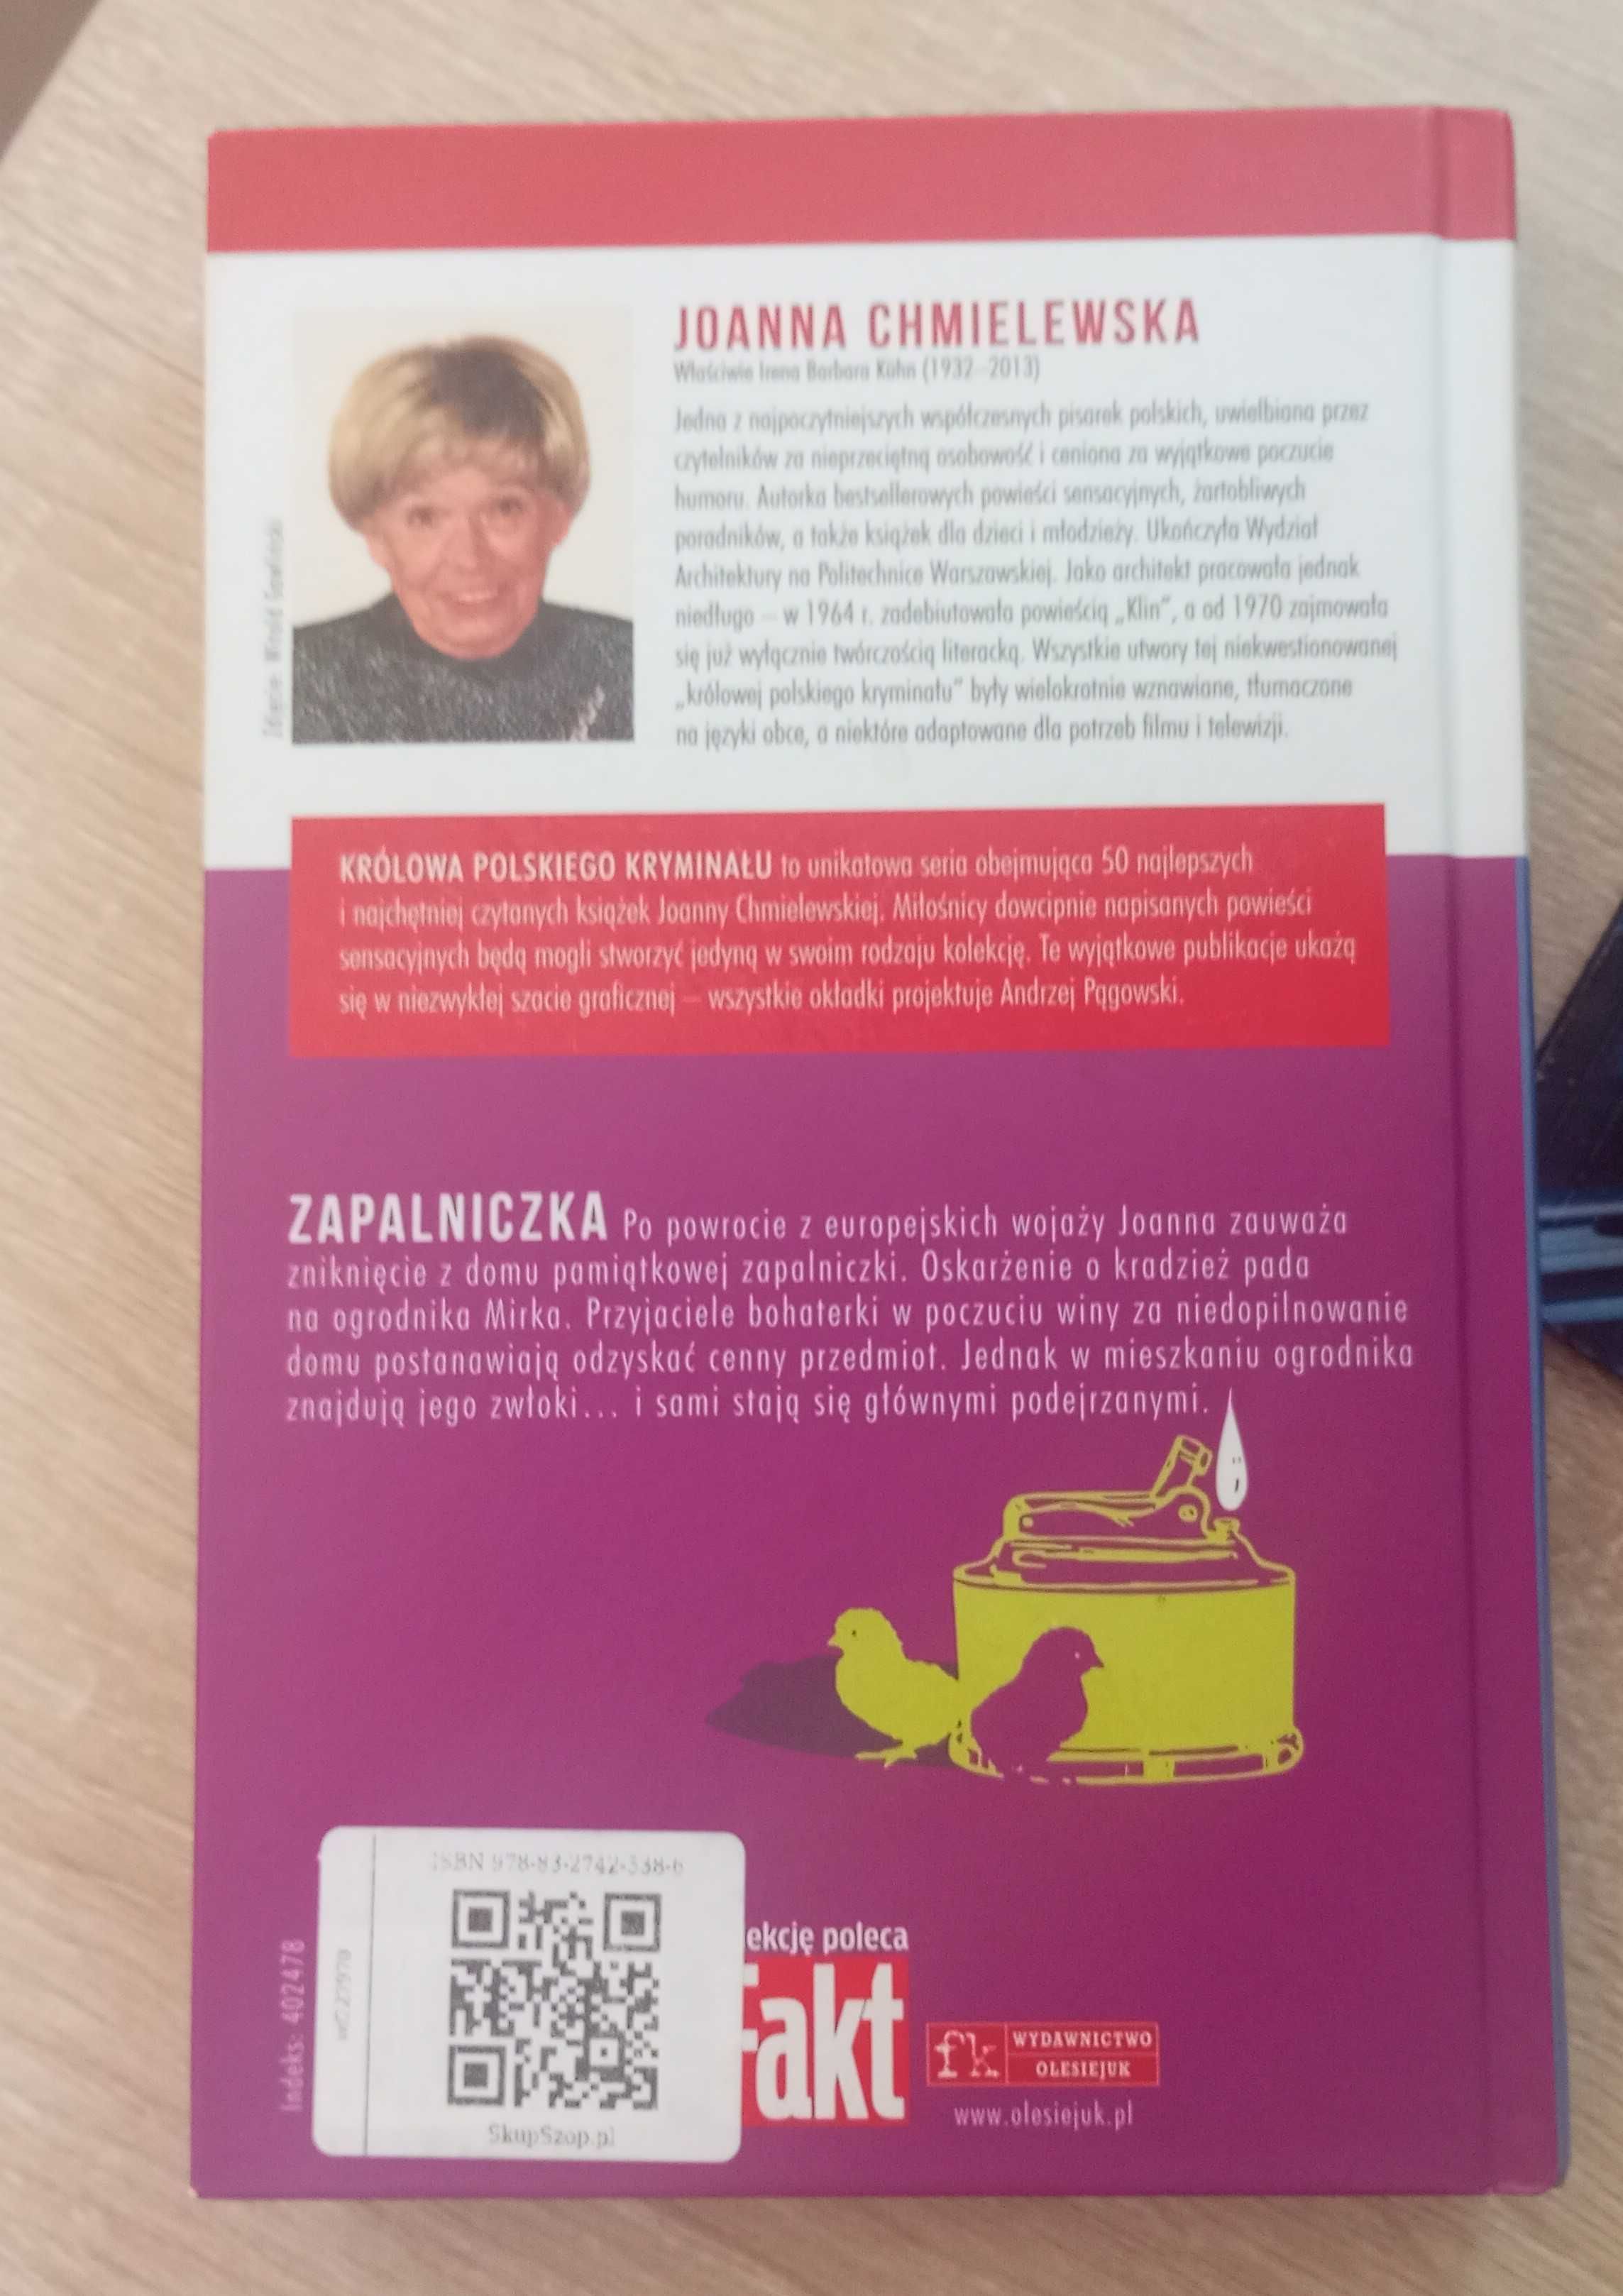 Joanna Chmielewska "Złota mucha", "Zapalniczka"